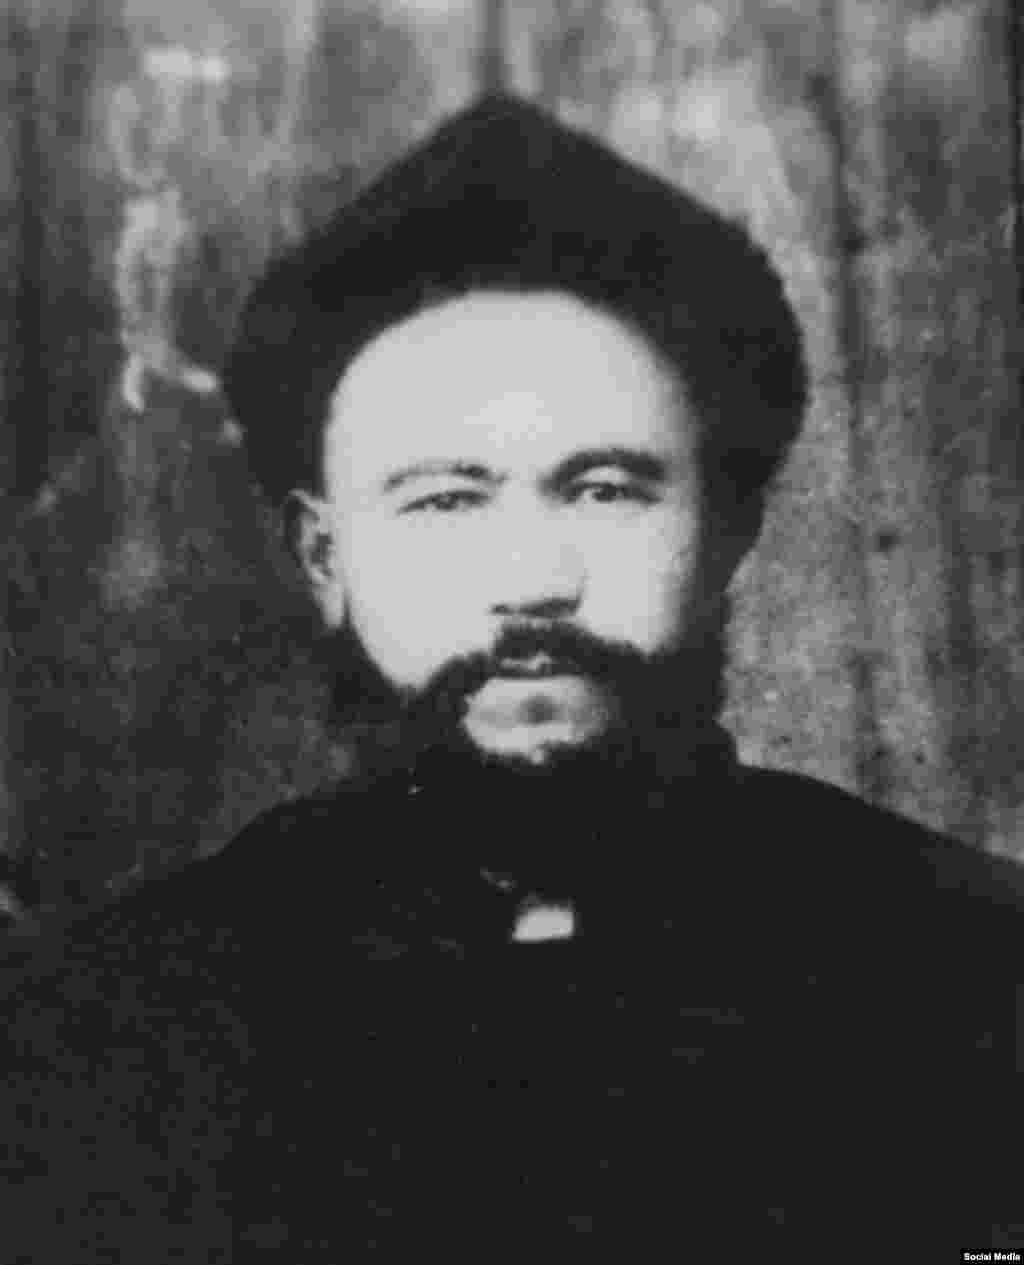 1933-ж. Чыгыш Түркстан Ислам Жумуриятынын премьер-министри болуп Сабит Дамулла Абдулбакы (1883&mdash;1934) шайланган.&nbsp;